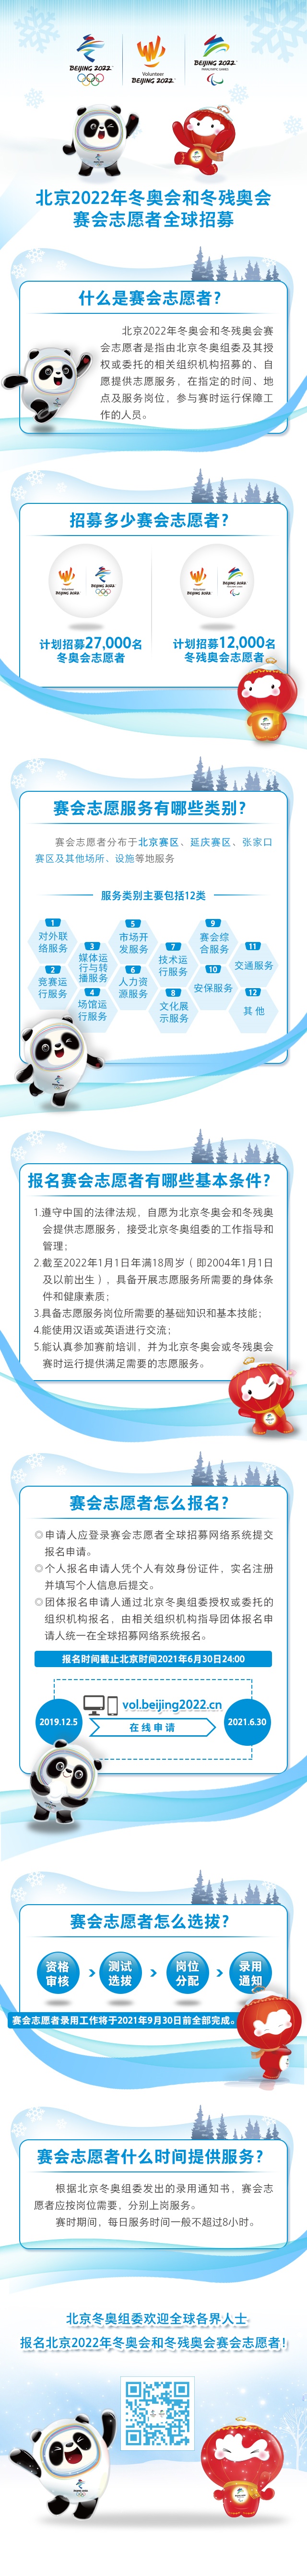 北京冬奥会和冬残奥会志愿者全球招募启动，报名指南来了